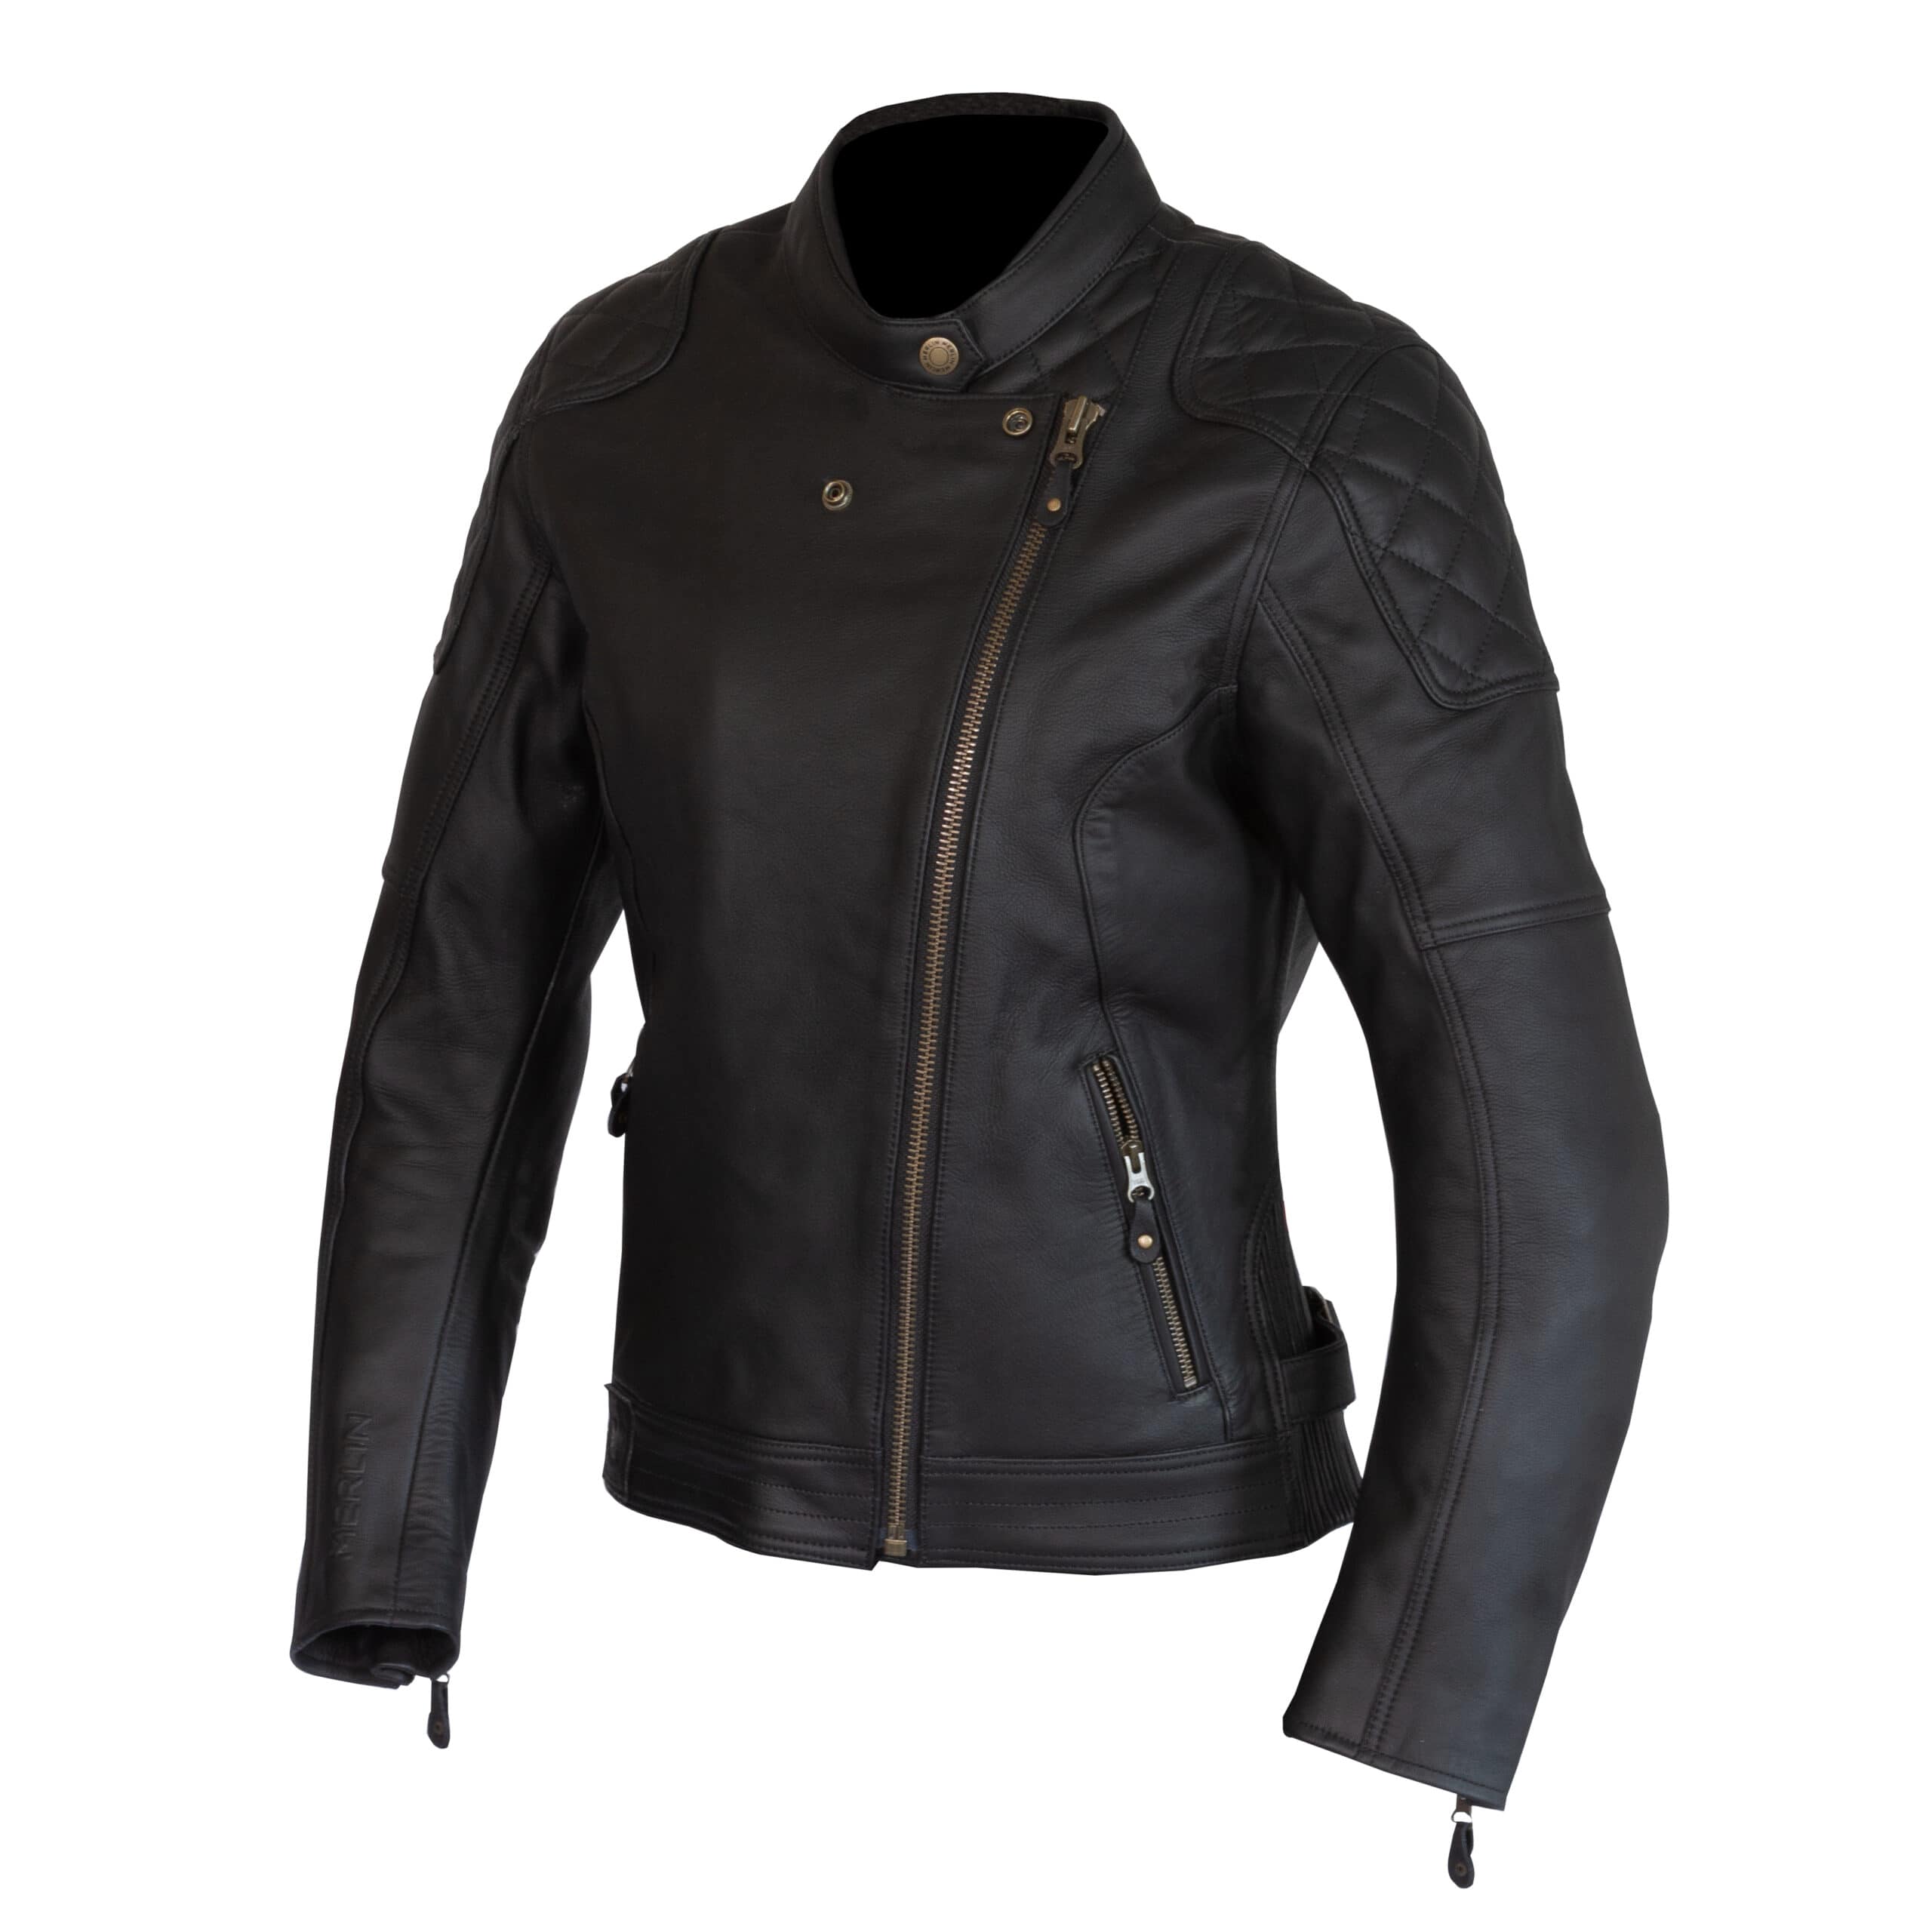 Merlin Bristol Ladies jacket in black